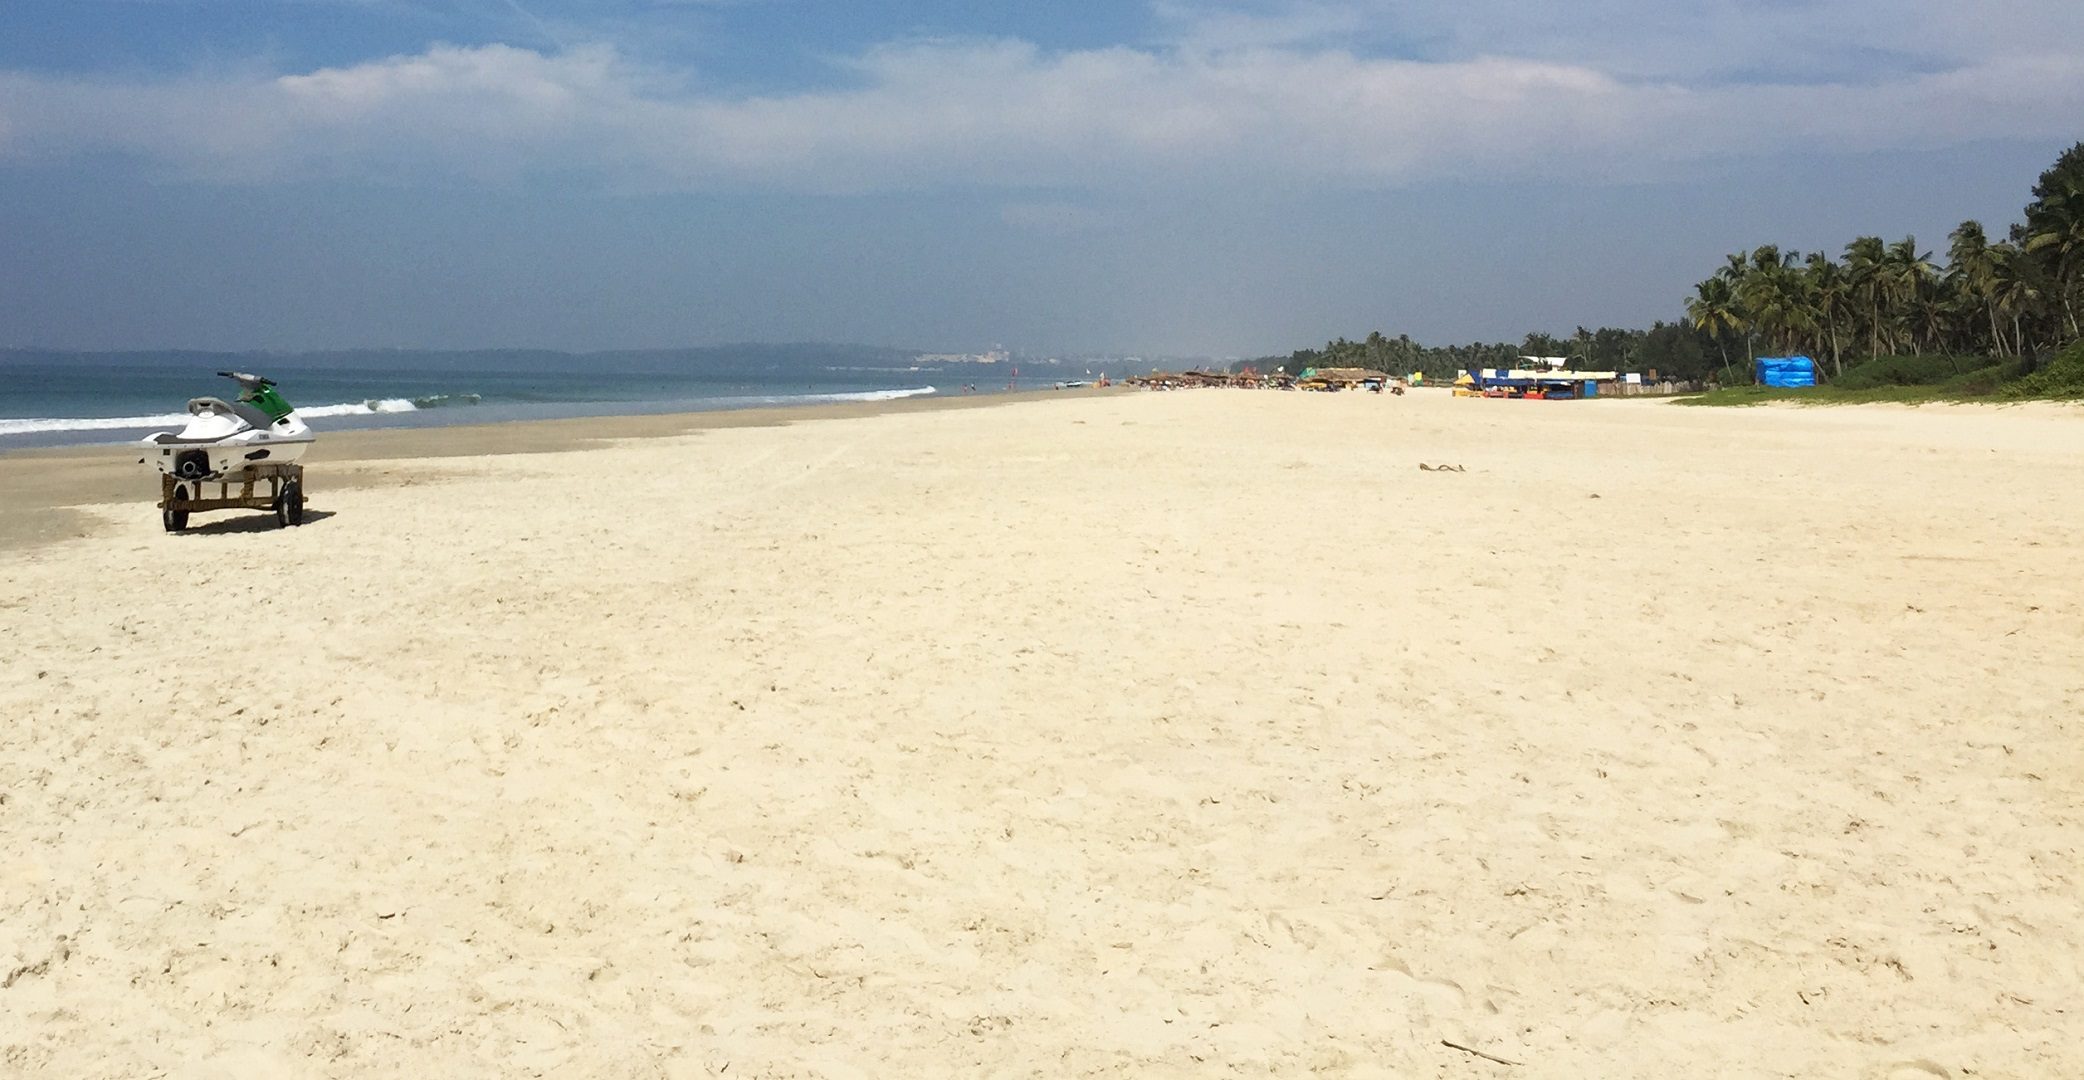 Пляжи гоа — пляжные места с ресторанами, кафе и отдыхом на песке